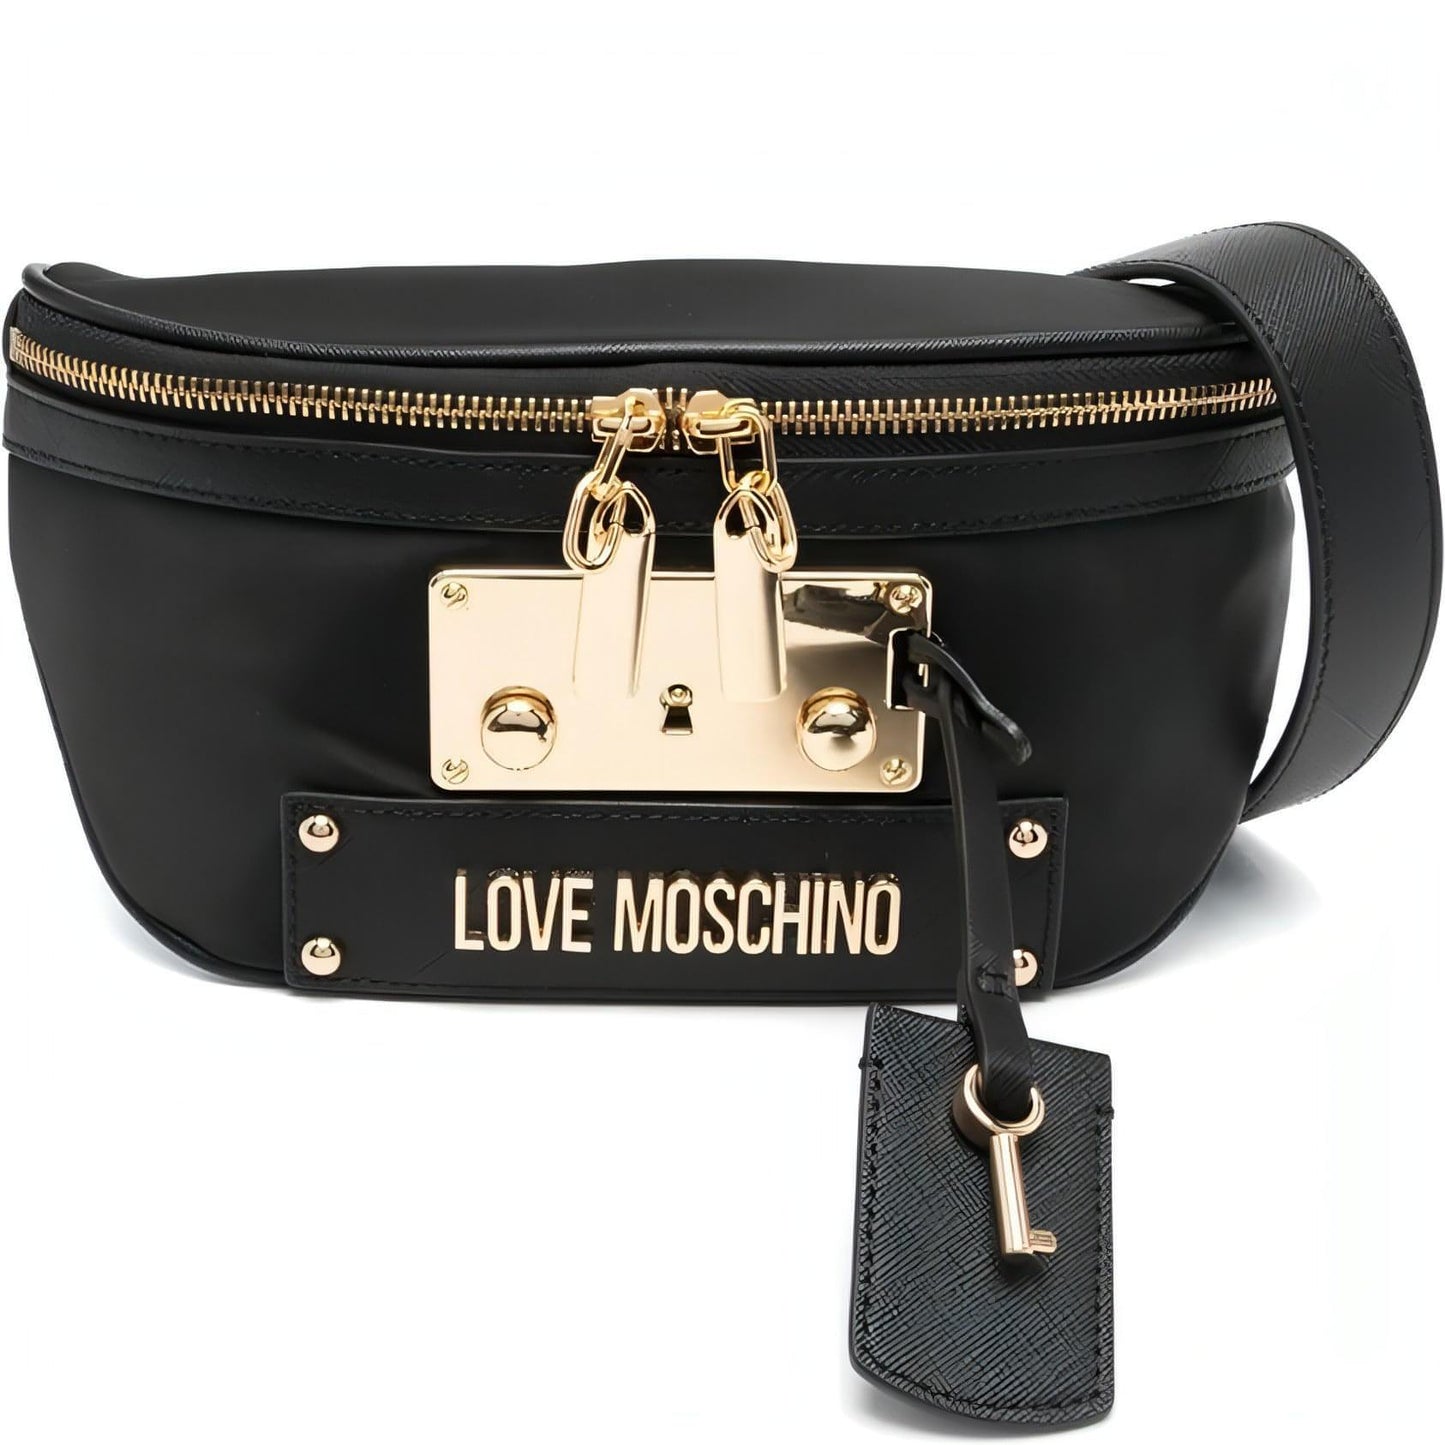 LOVE MOSCHINO moteriška juoda rankinė per juosmenį Belt bag